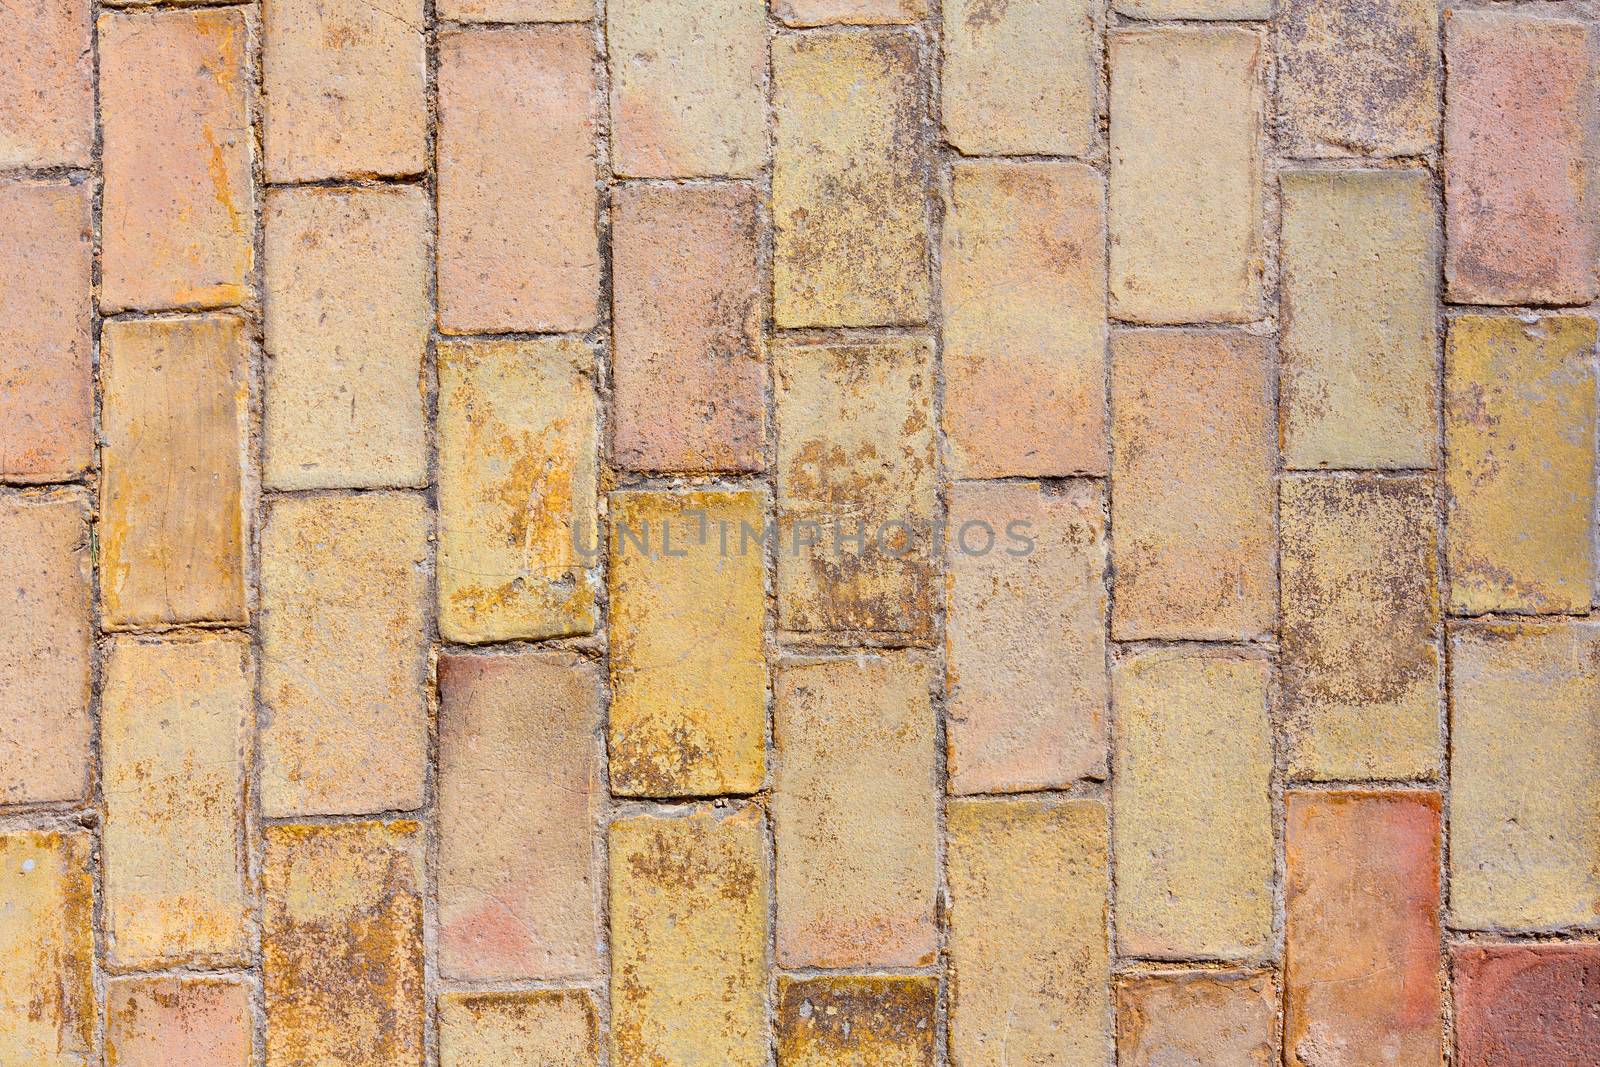 Clay ancient brick flooring texture in Alicante castle of Spain